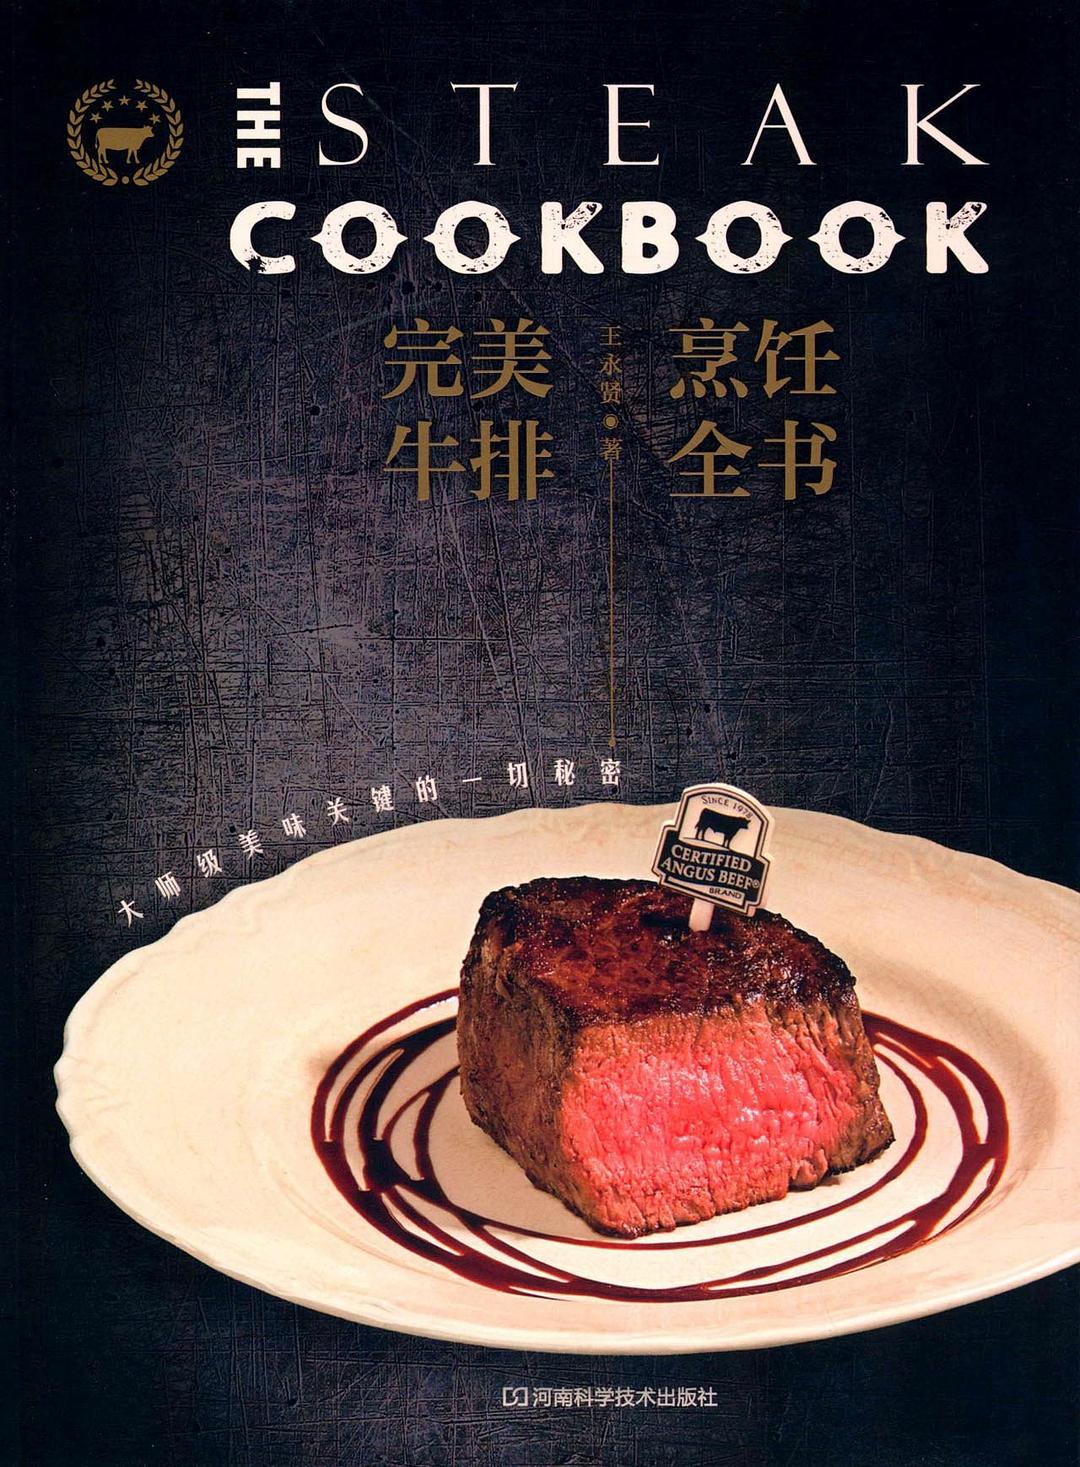 完美牛排烹饪全书